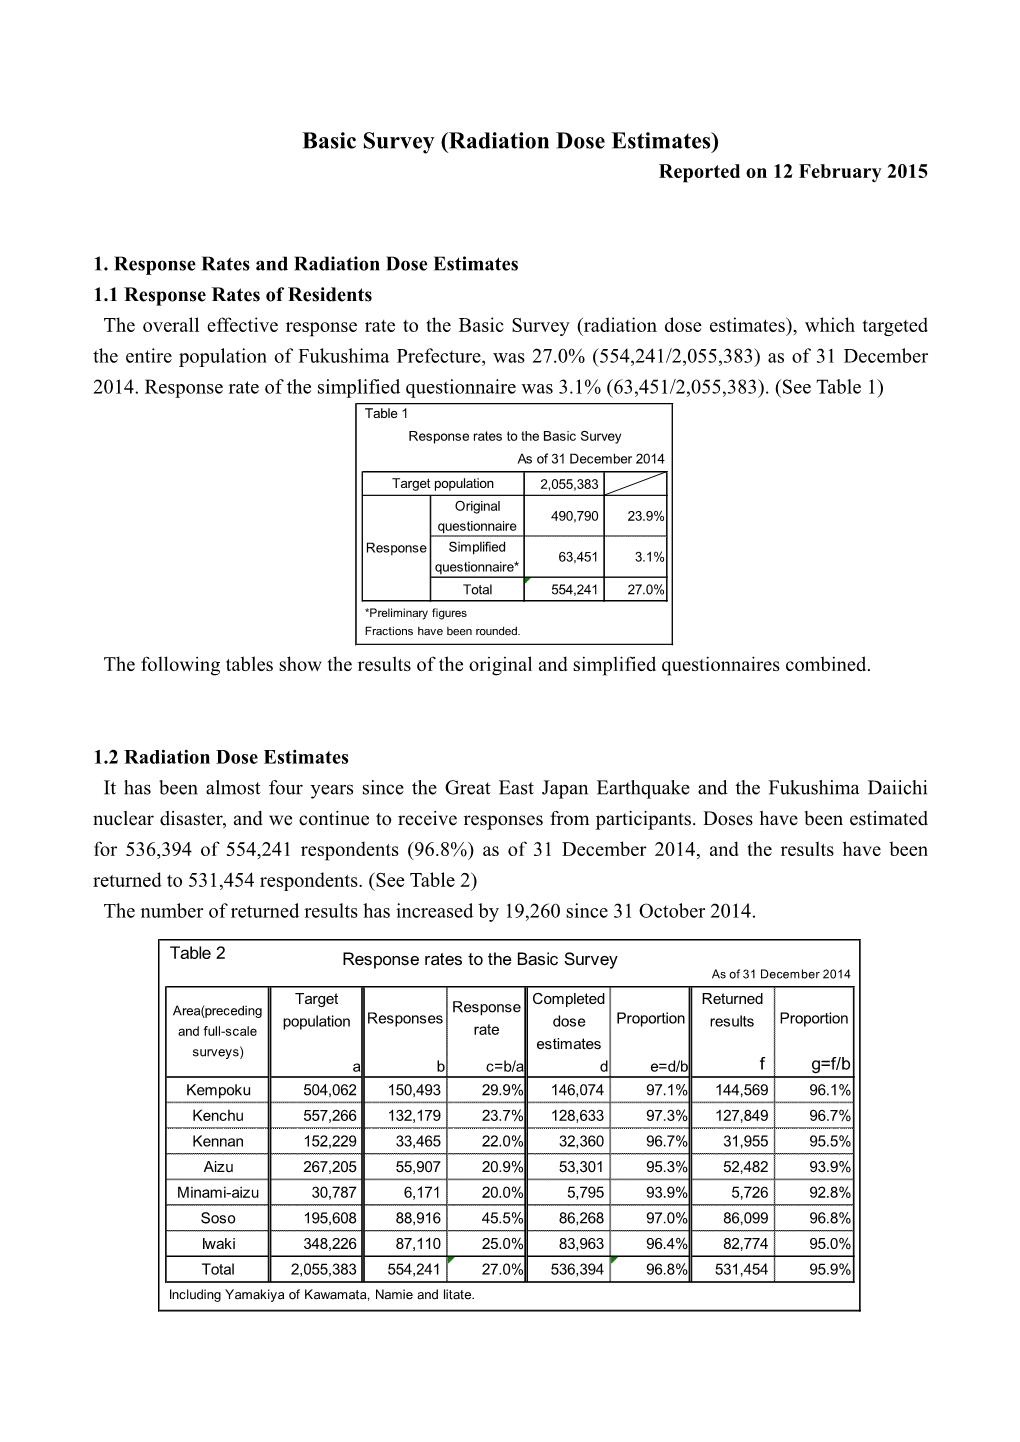 Basic Survey (Radiation Dose Estimates) Reported on 12 February 2015